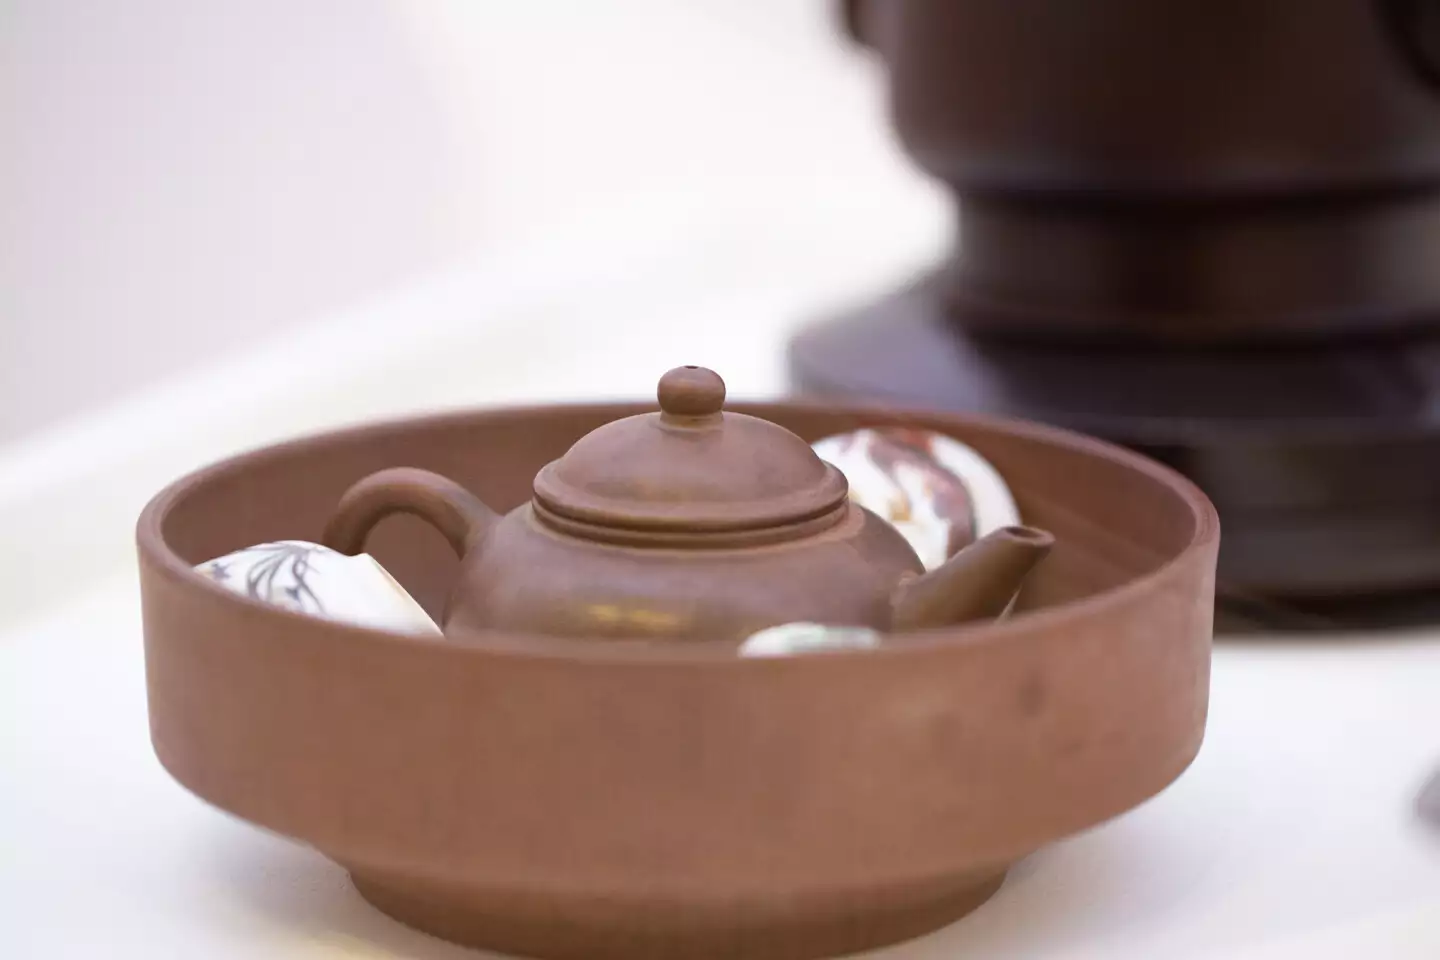 盛裝茶壺和薄胎小杯的茶船。圖片來源：研之有物；茶具所有：郭國文。